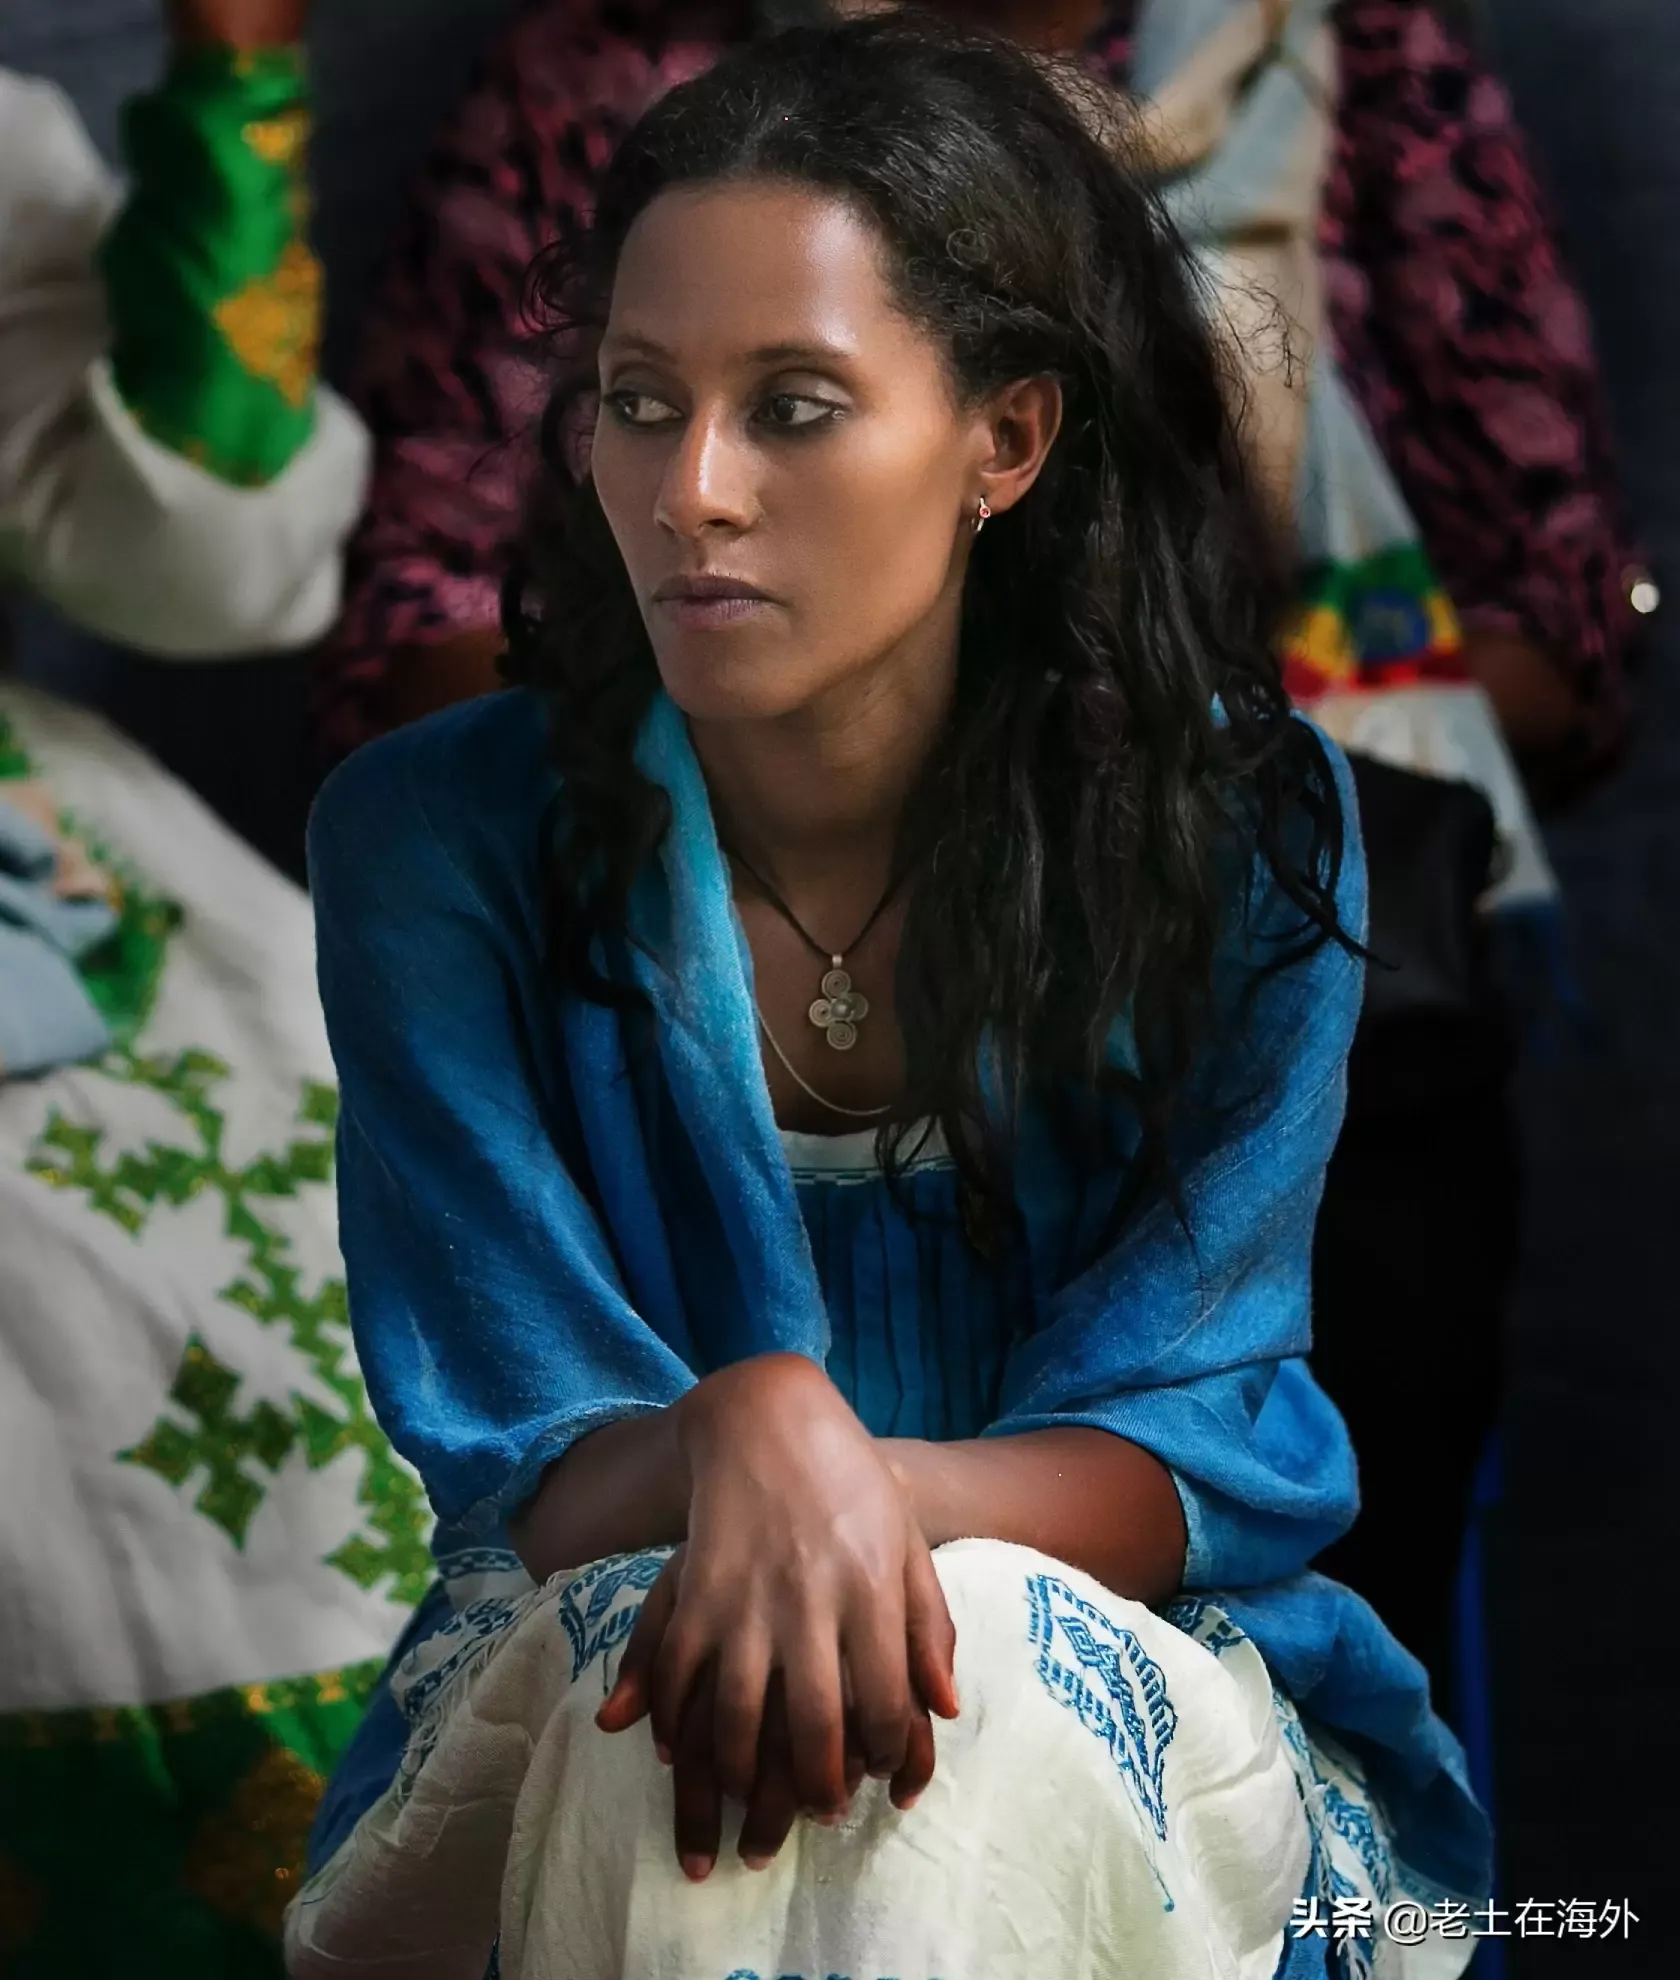 埃塞俄比亚中国工厂的几位美女，最后一位是我们公认最漂亮的厂花